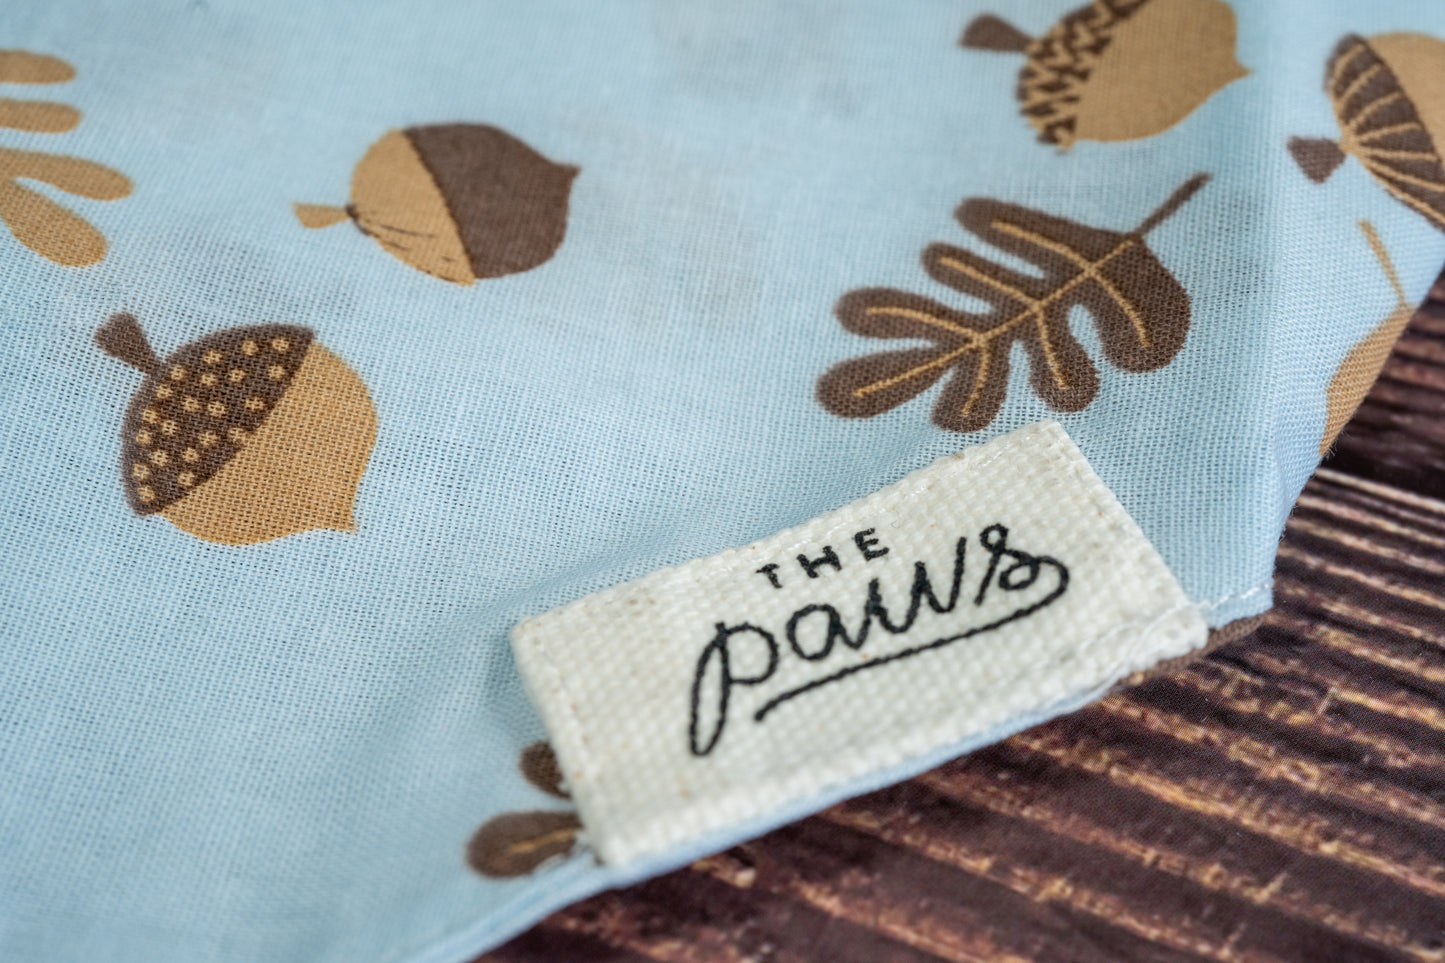 Close-up of The Paws logo on the light blue dog bandana.